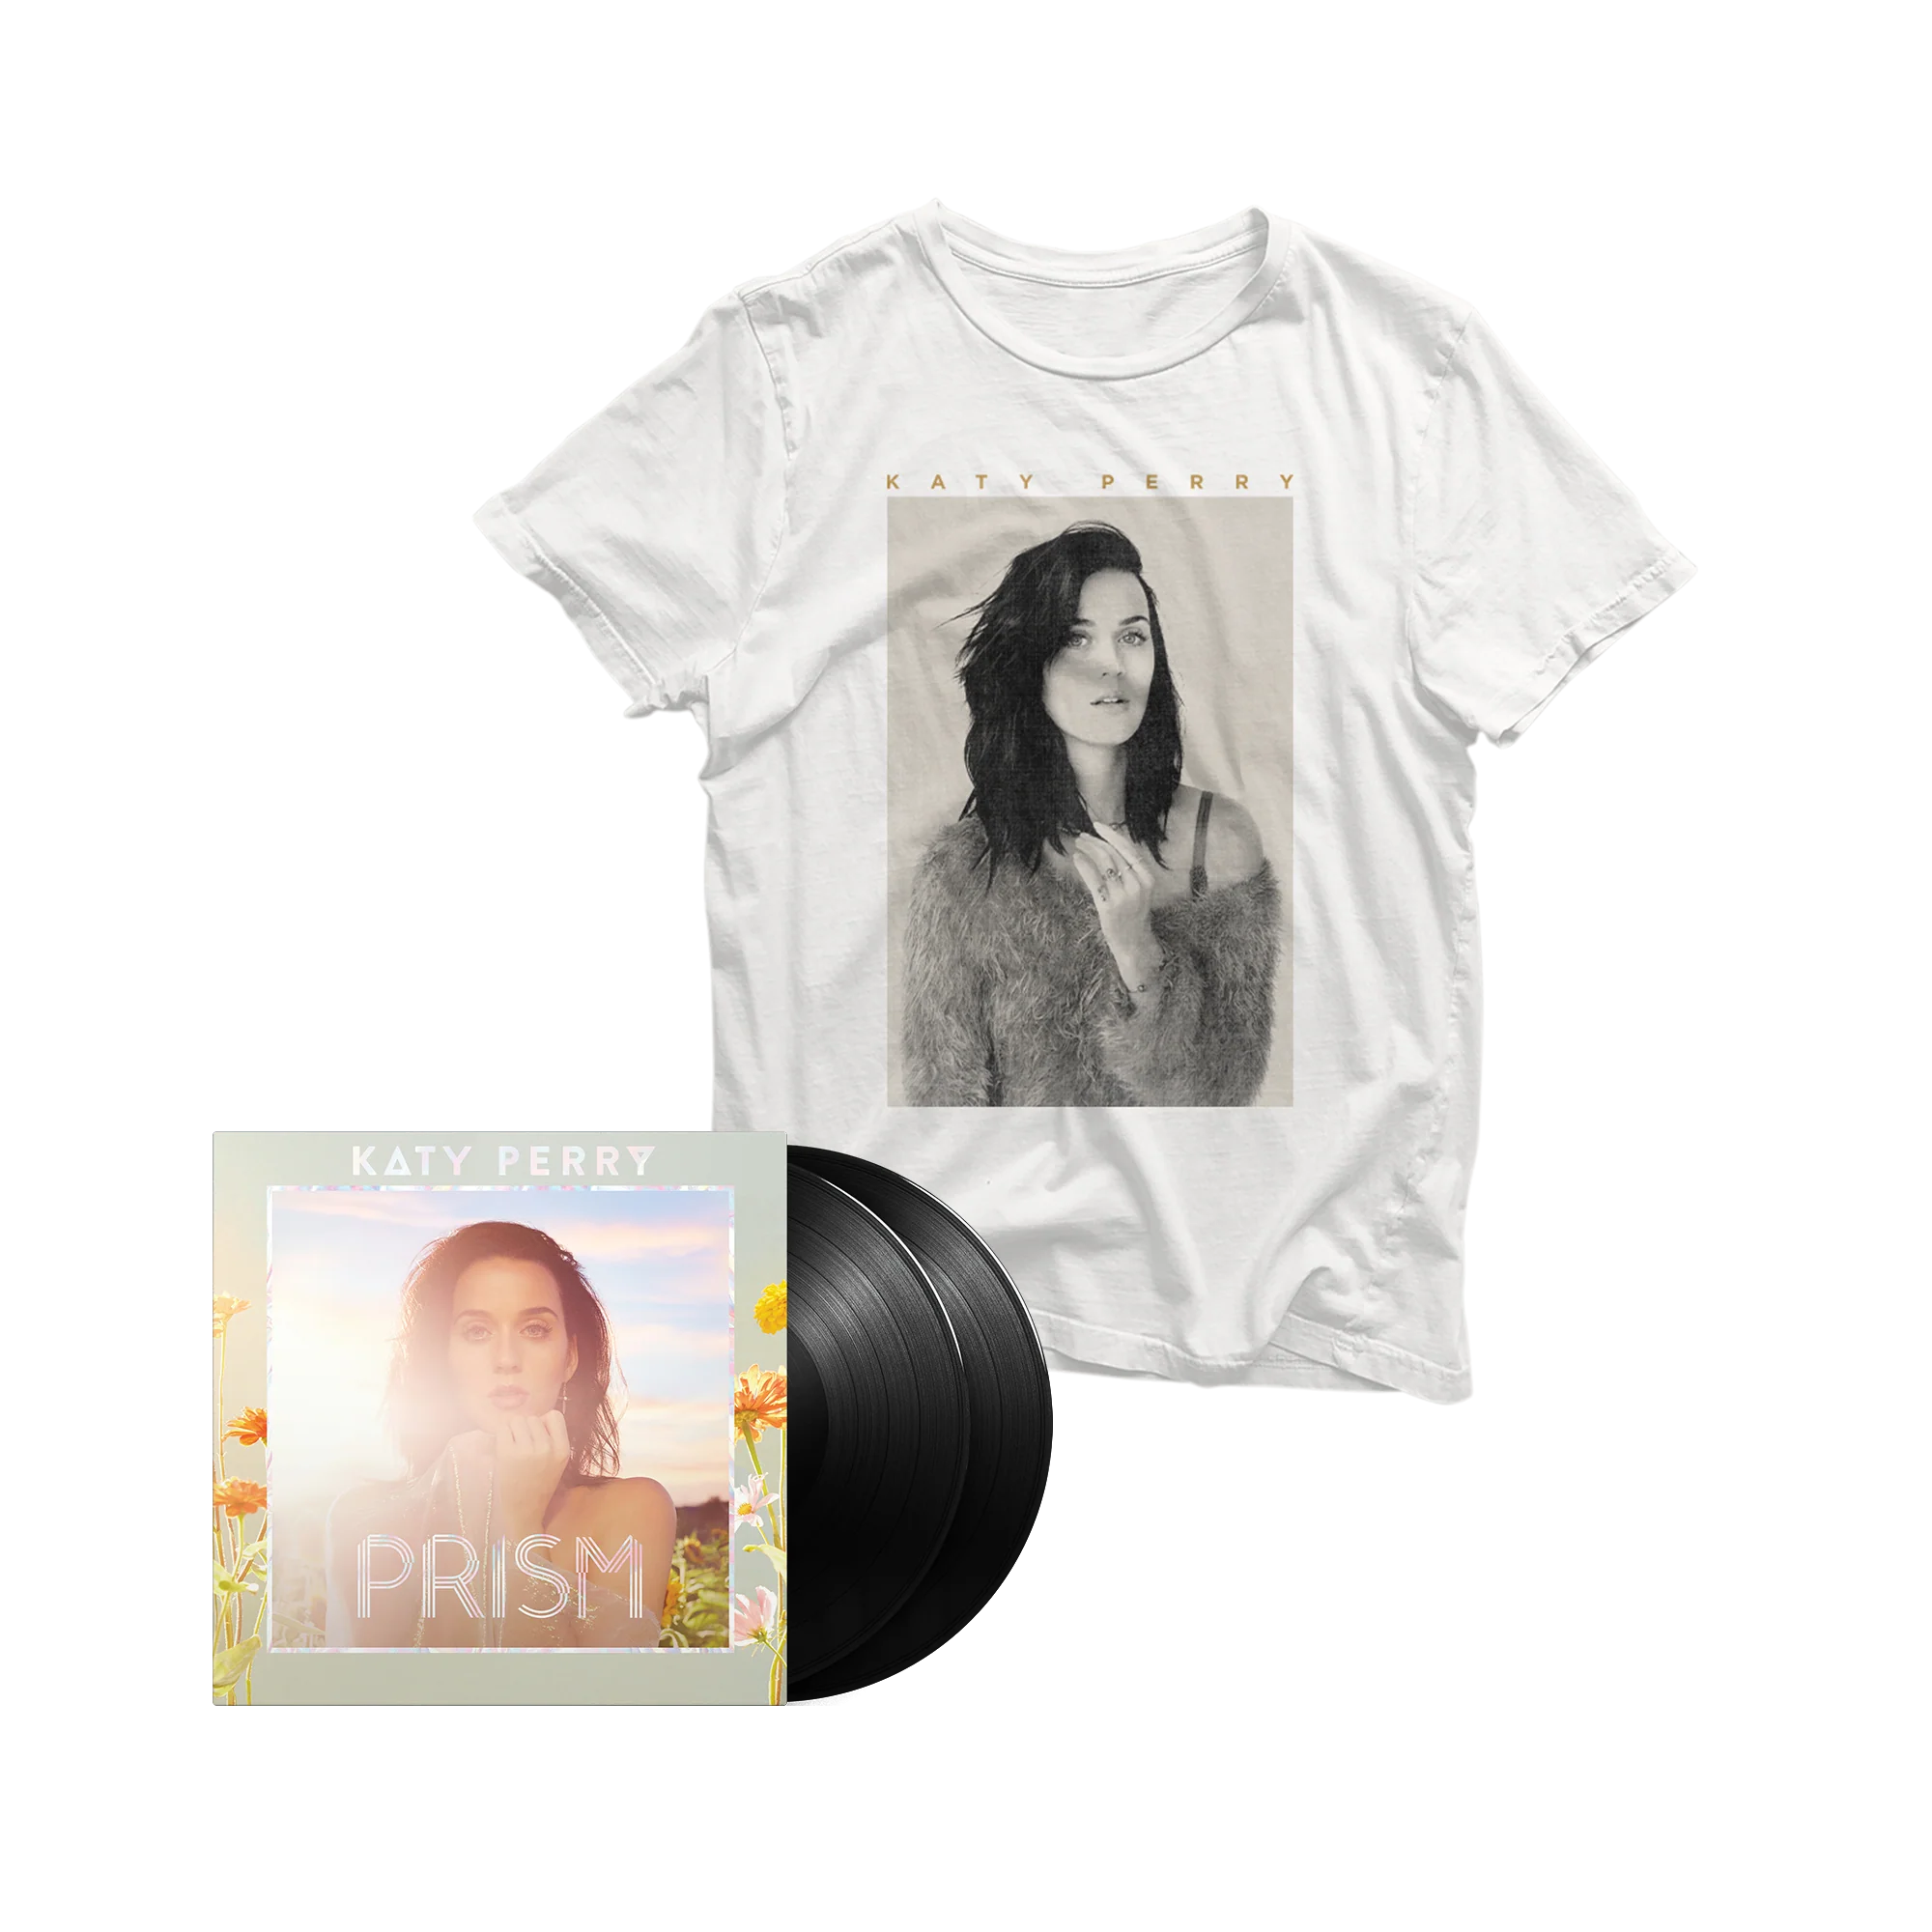 PRISM: Vinyl 2LP + This Moment T-Shirt (Roar Pack)